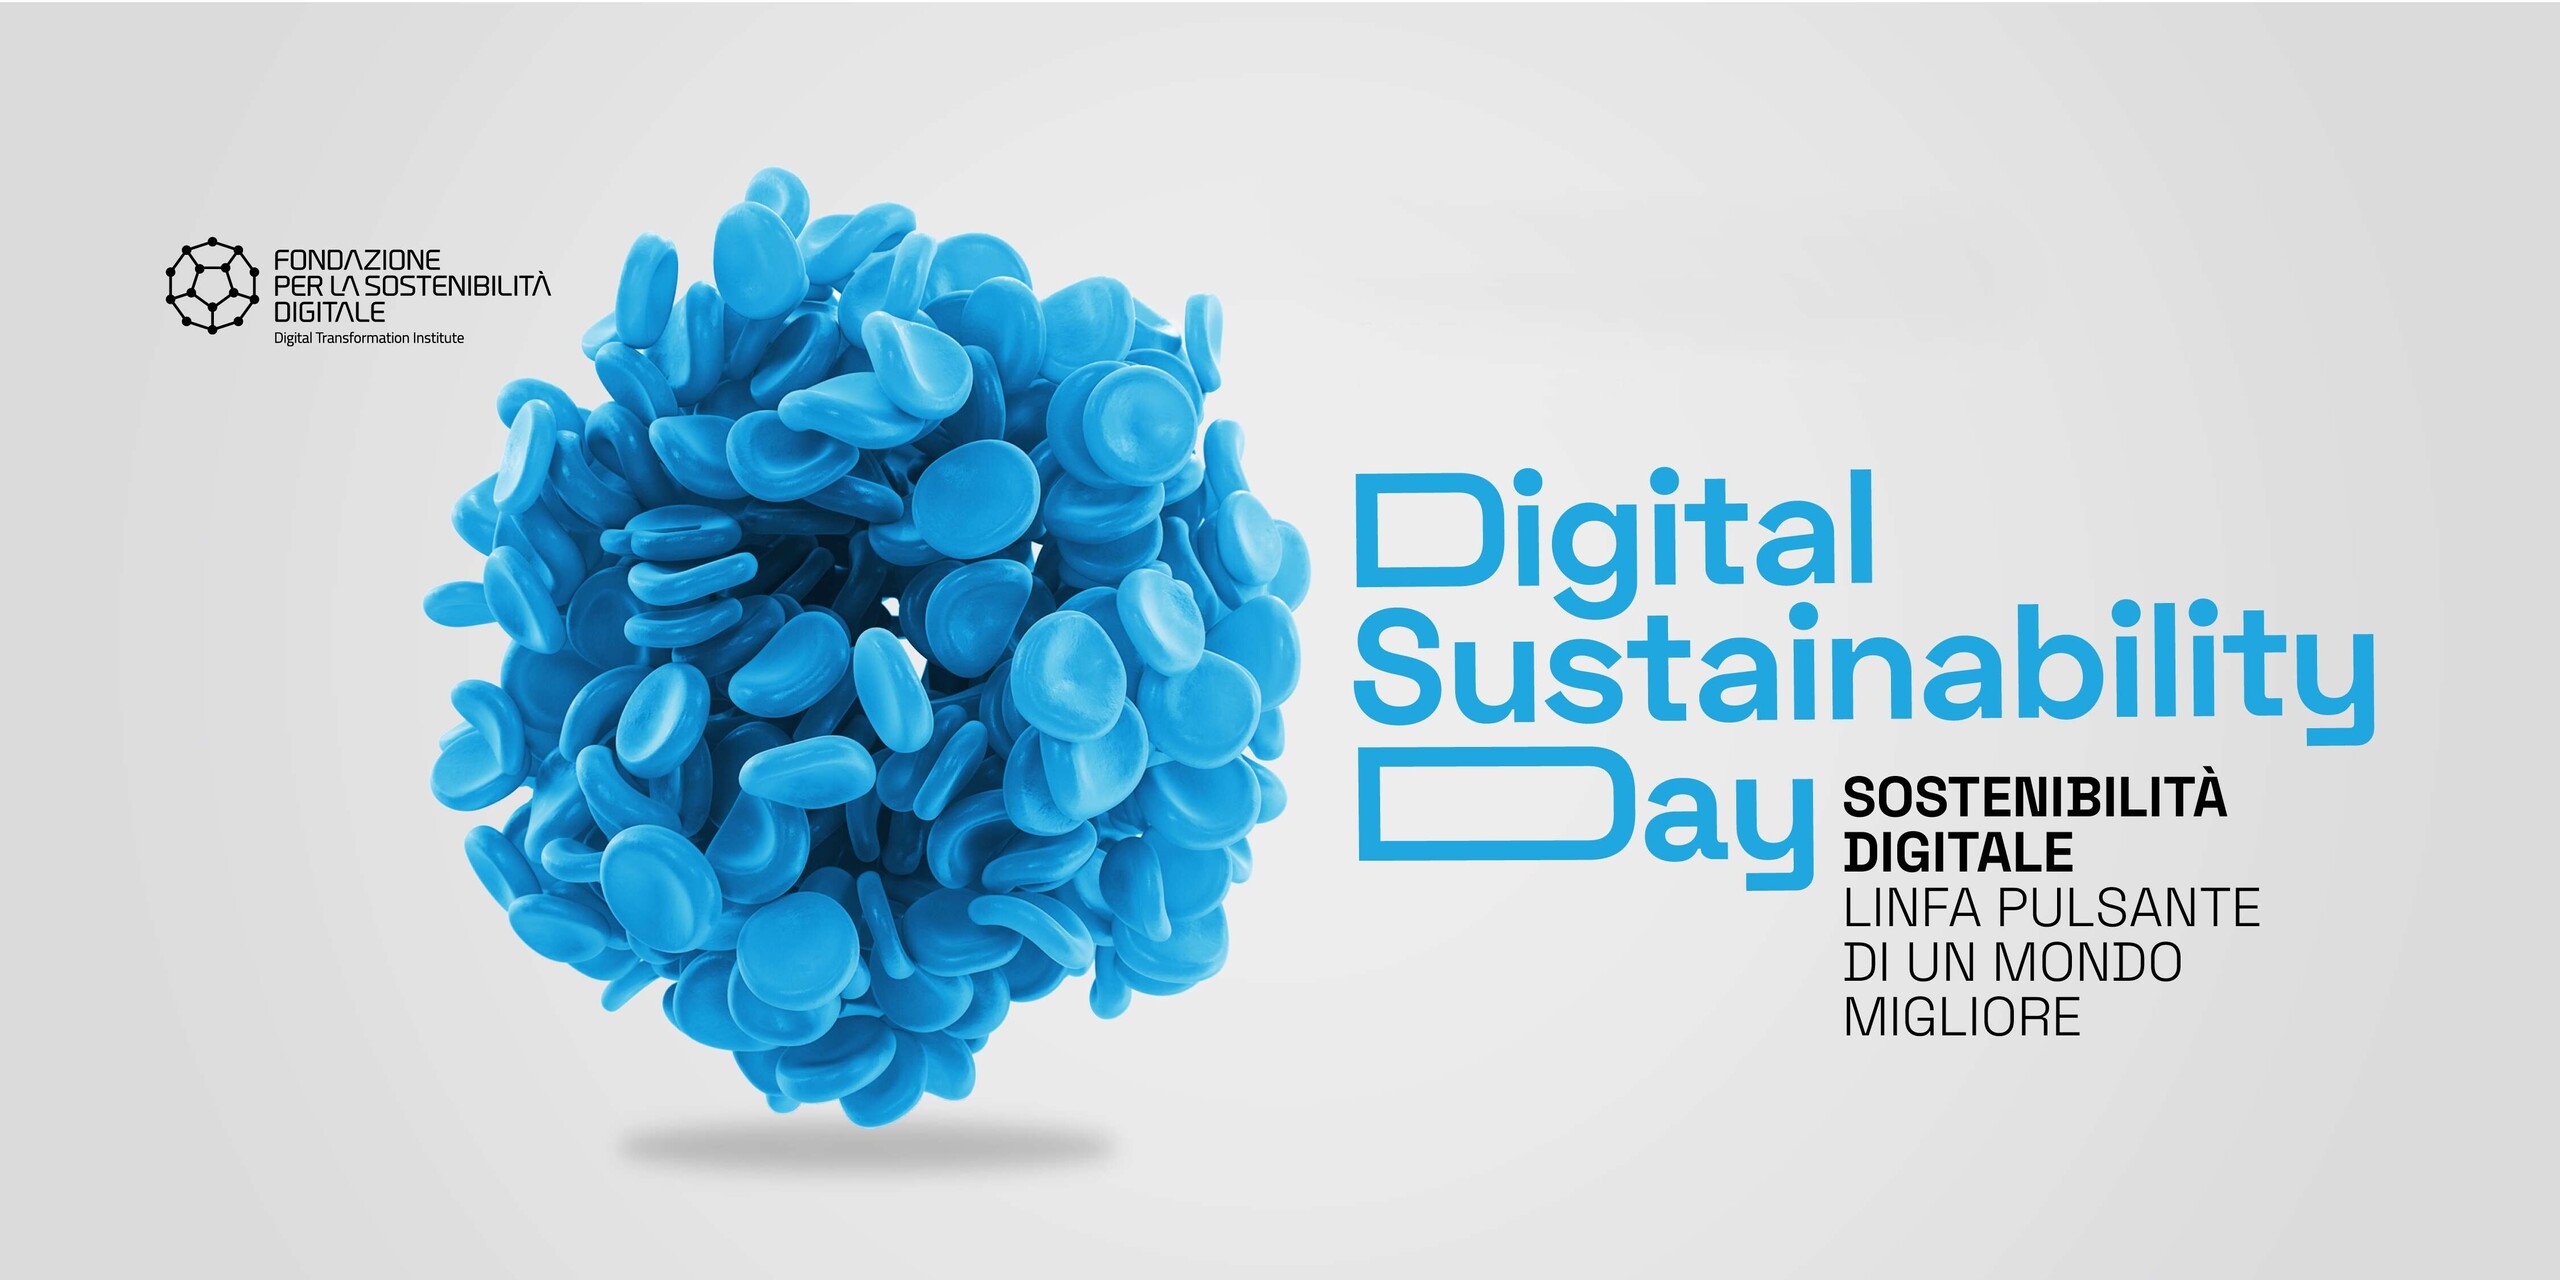 Stefano Epifani: el key visual del evento “Día de la Sostenibilidad Digital”, promovido por Stefano Epifani